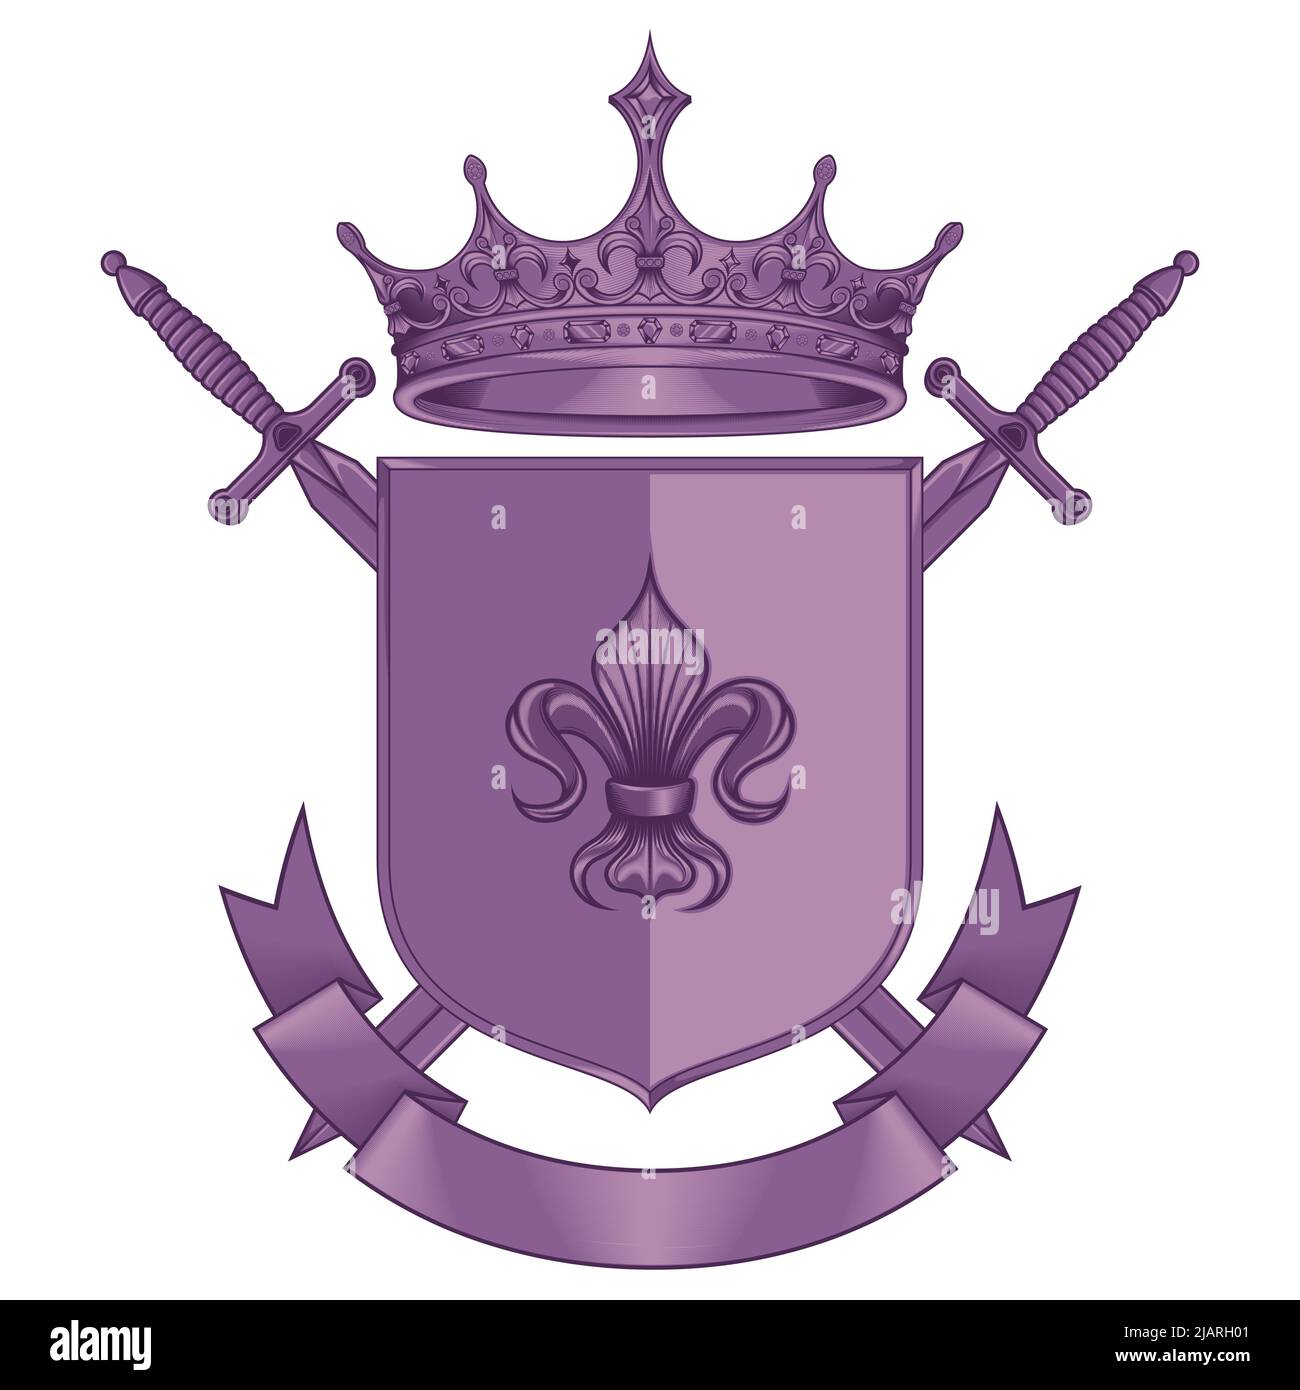 Mittelalter Wappenschild Vektor-Design, Wappen mit Fleur de Lis Wappenzeichen, mit Kronen und Schwertern Stock Vektor